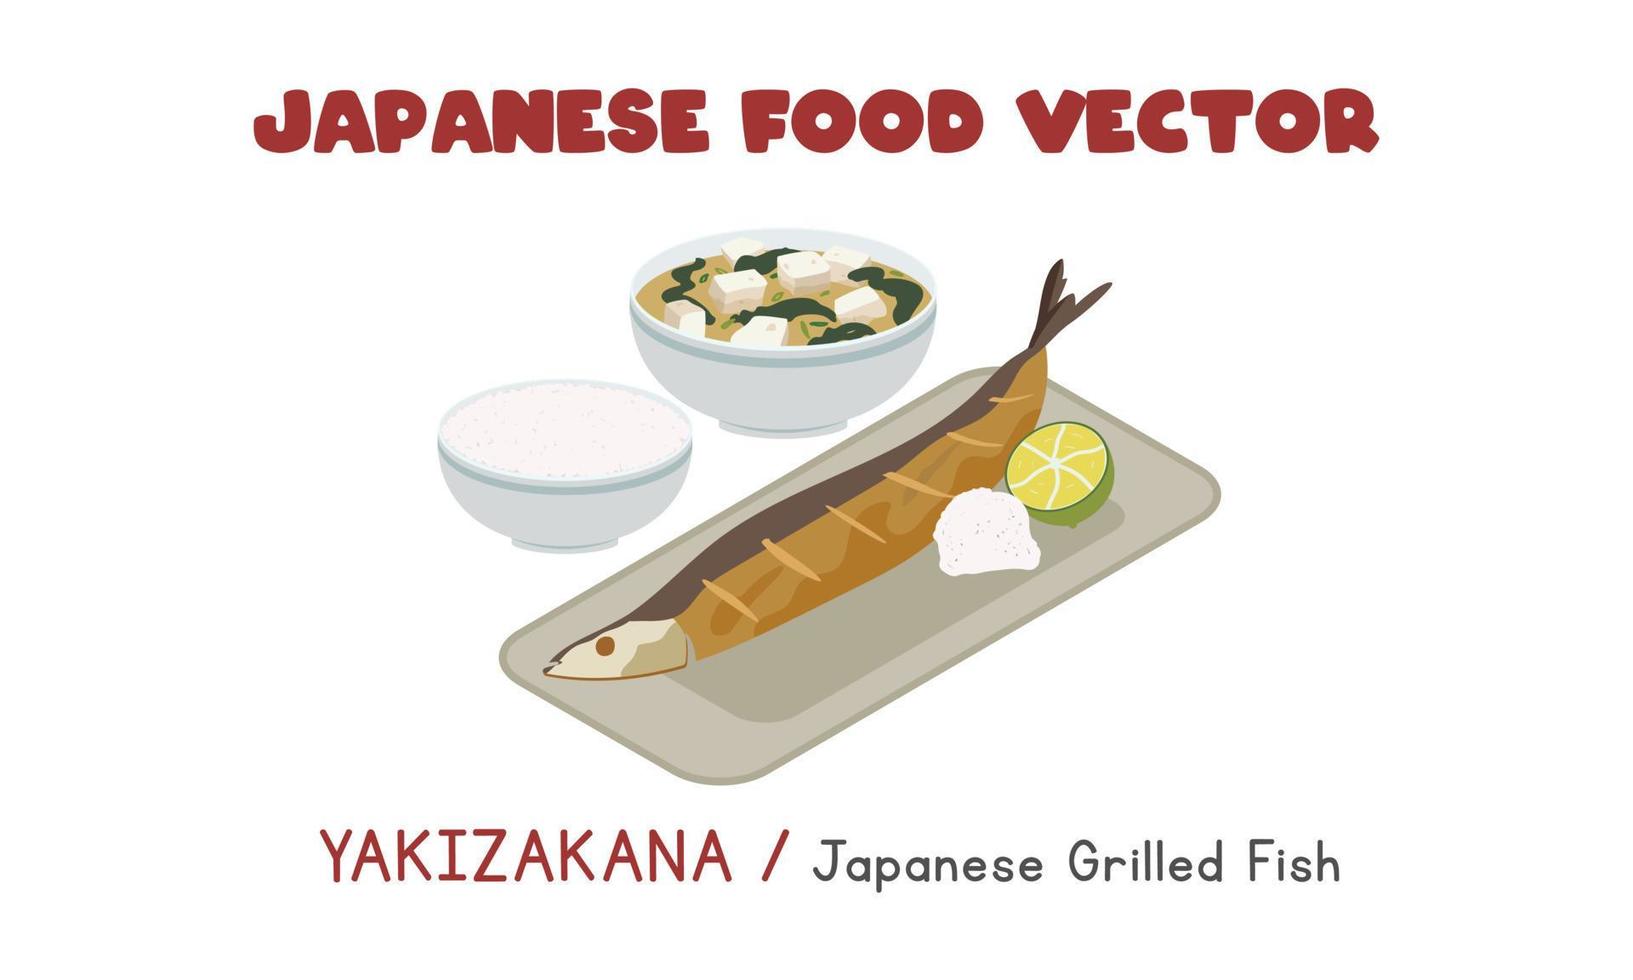 japanisches yakizakana - japanischer gegrillter fisch mit daikon-rettich, schüssel mit reis und misosuppe flache vektordesignillustration, clipart-karikaturart. asiatisches Essen. japanische Küche. japanisches Essen vektor